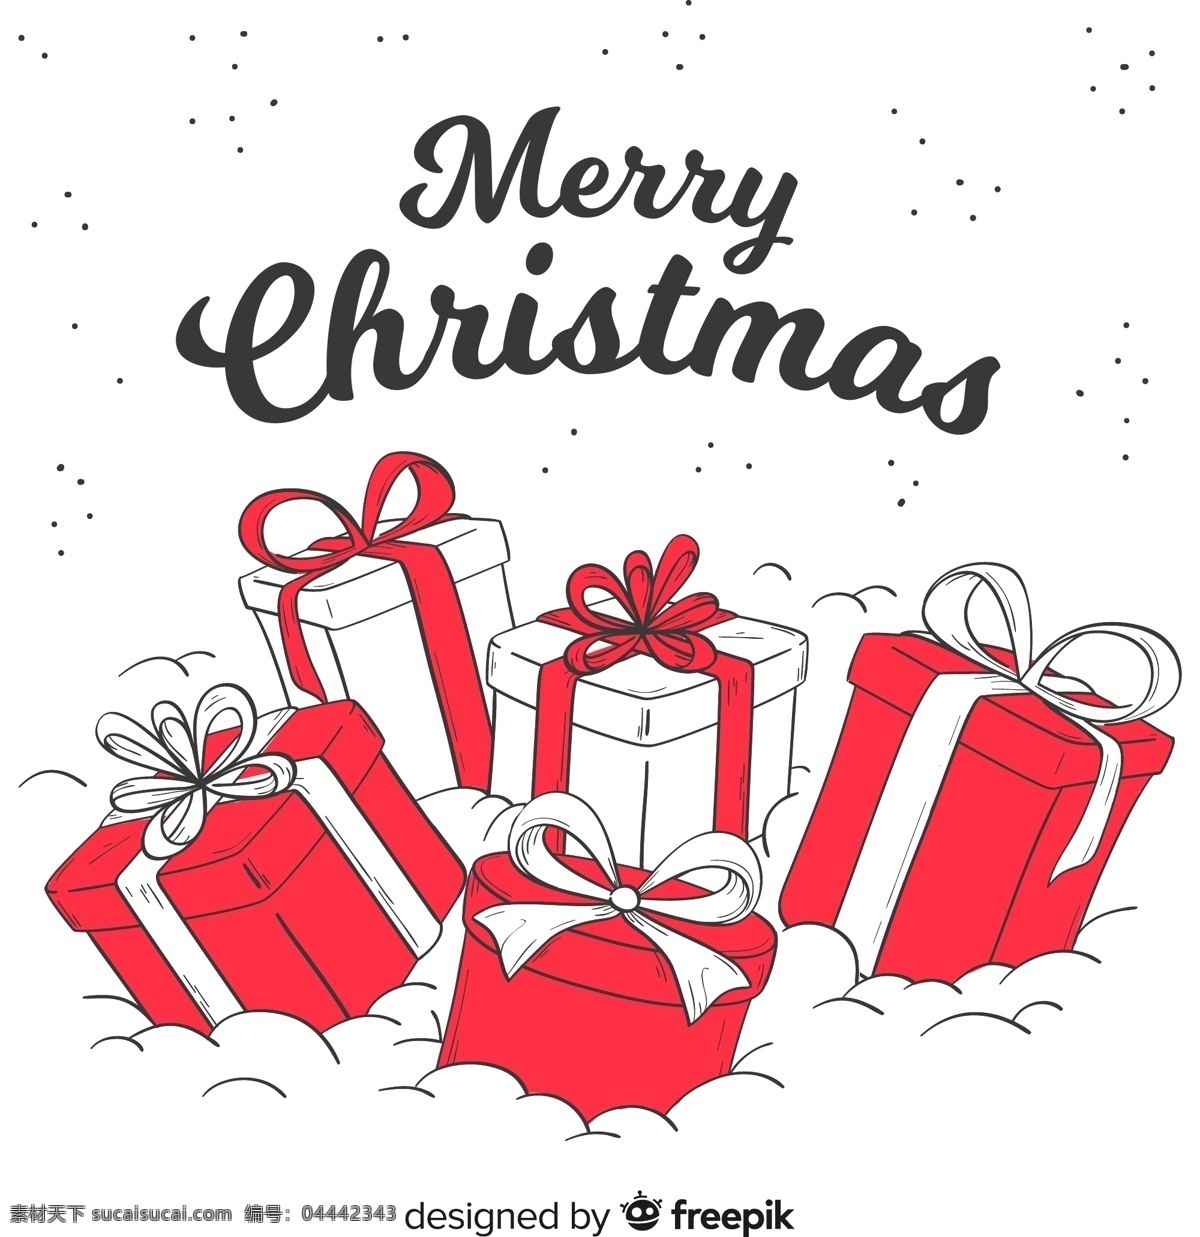 圣诞 节日 礼物 icon 圣诞老人 圣诞树 新年 线稿 手绘 插画 品牌设计 包装设计 图标设计 手绘图标 精美插画 节日礼品 卡通设计 圣诞节呦